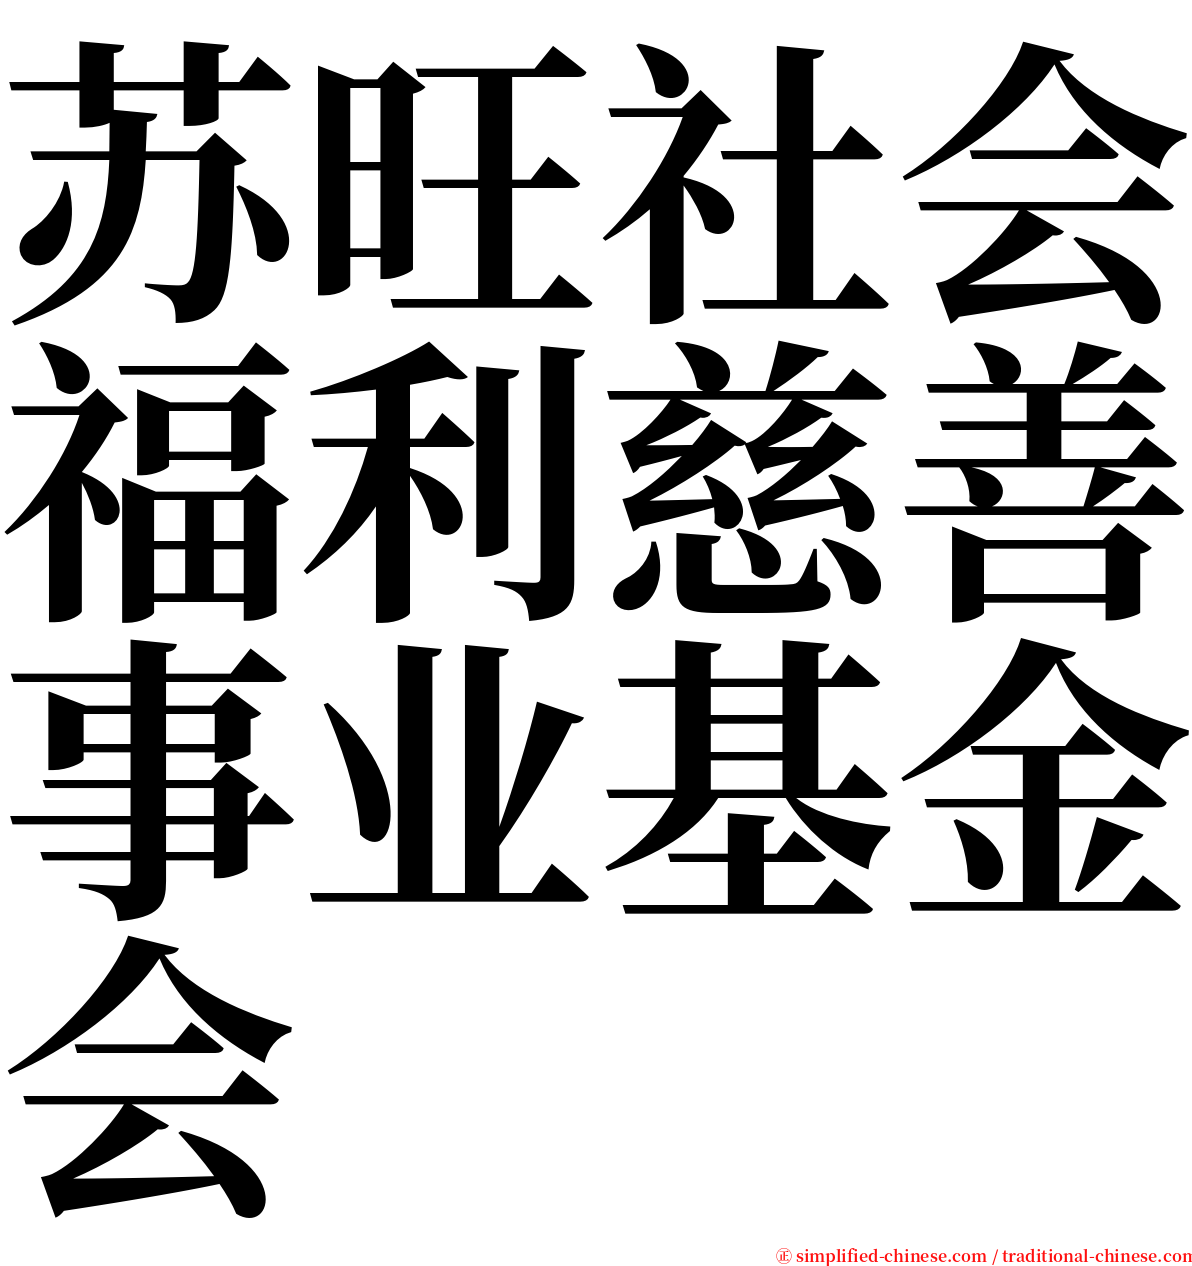 苏旺社会福利慈善事业基金会 serif font